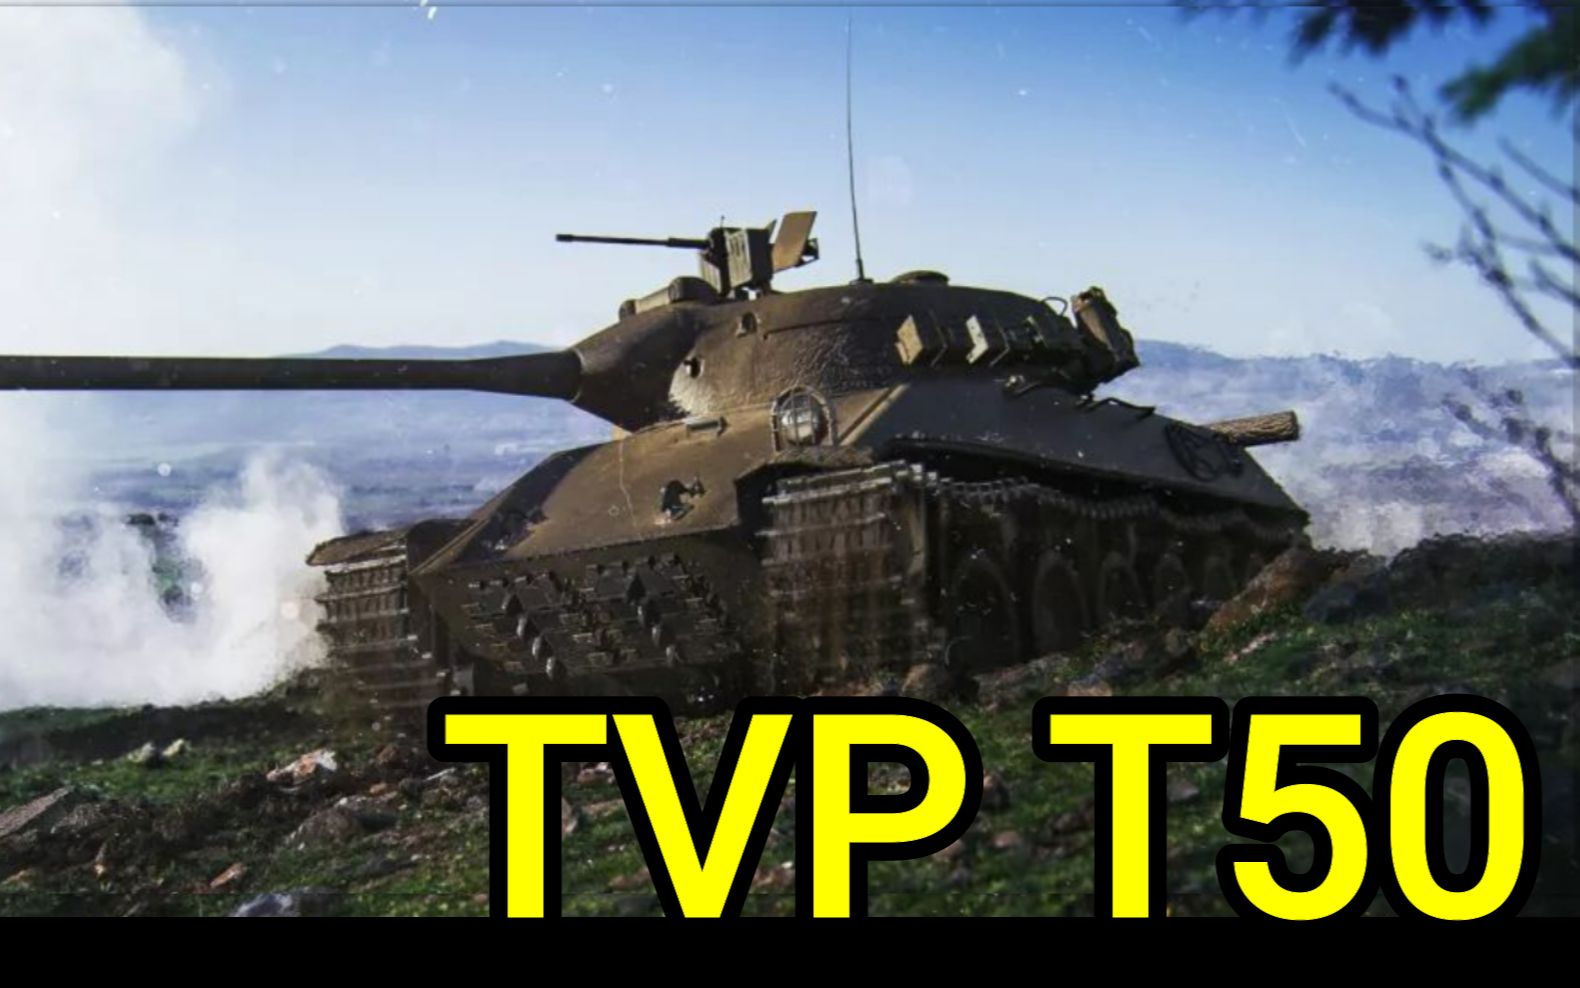 TVPT50图片